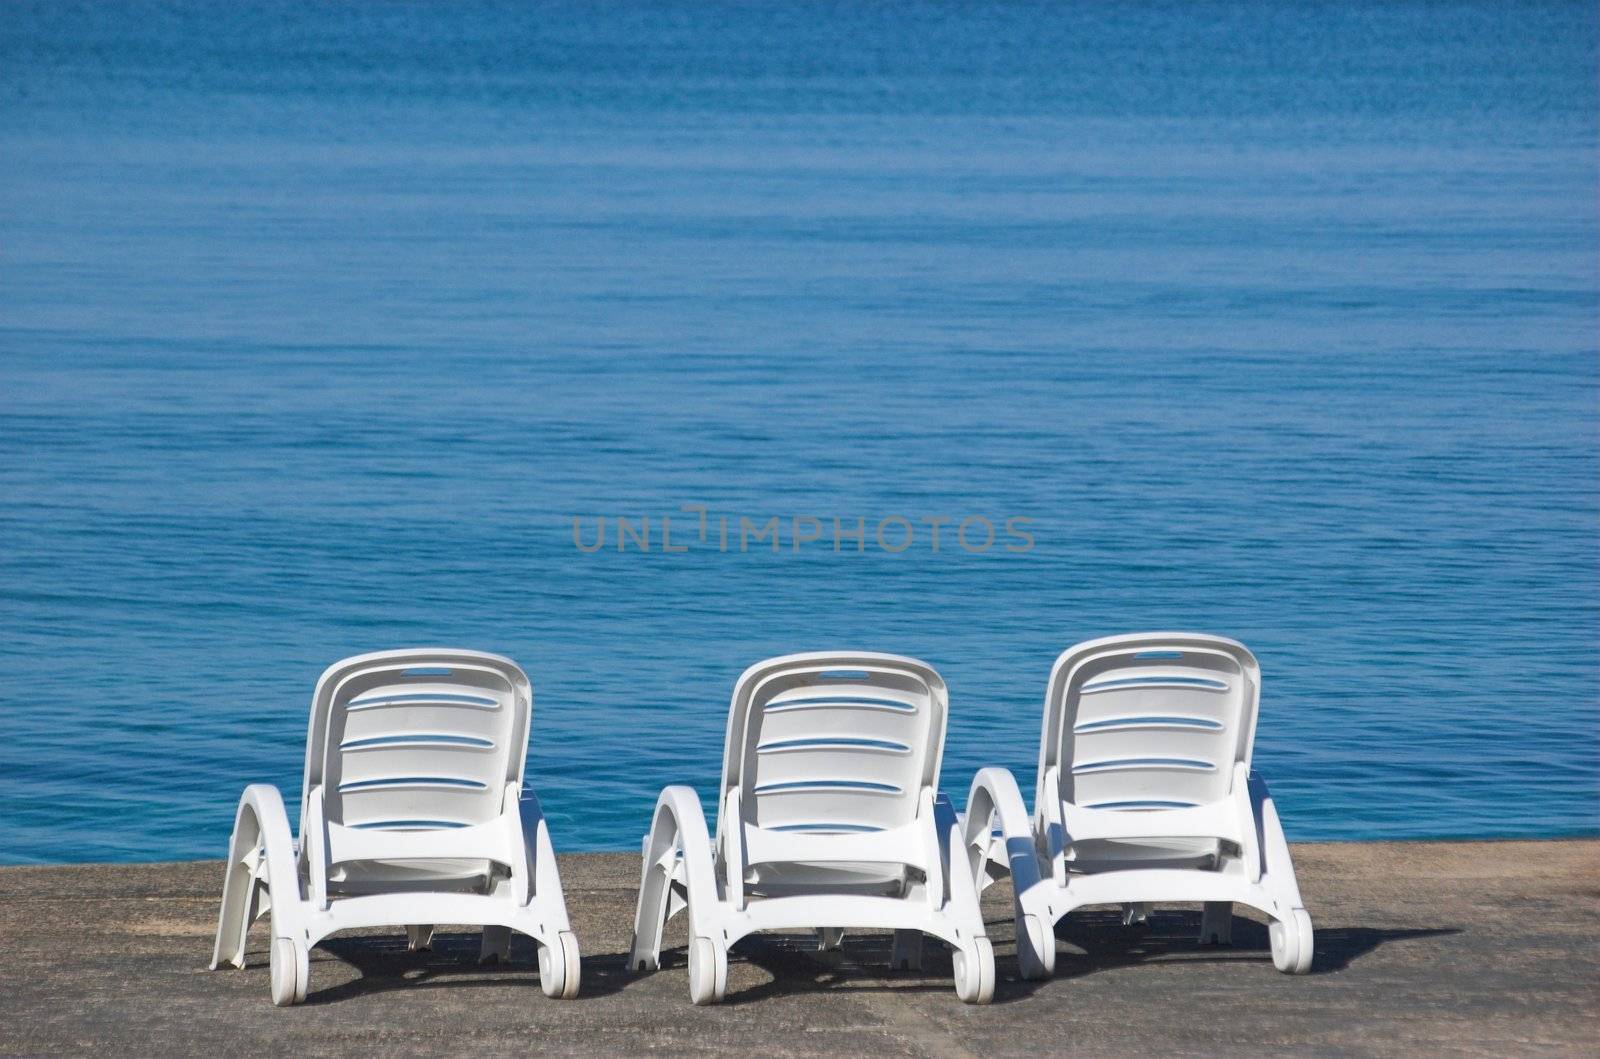 Plastic beach chair at the edge of a sea